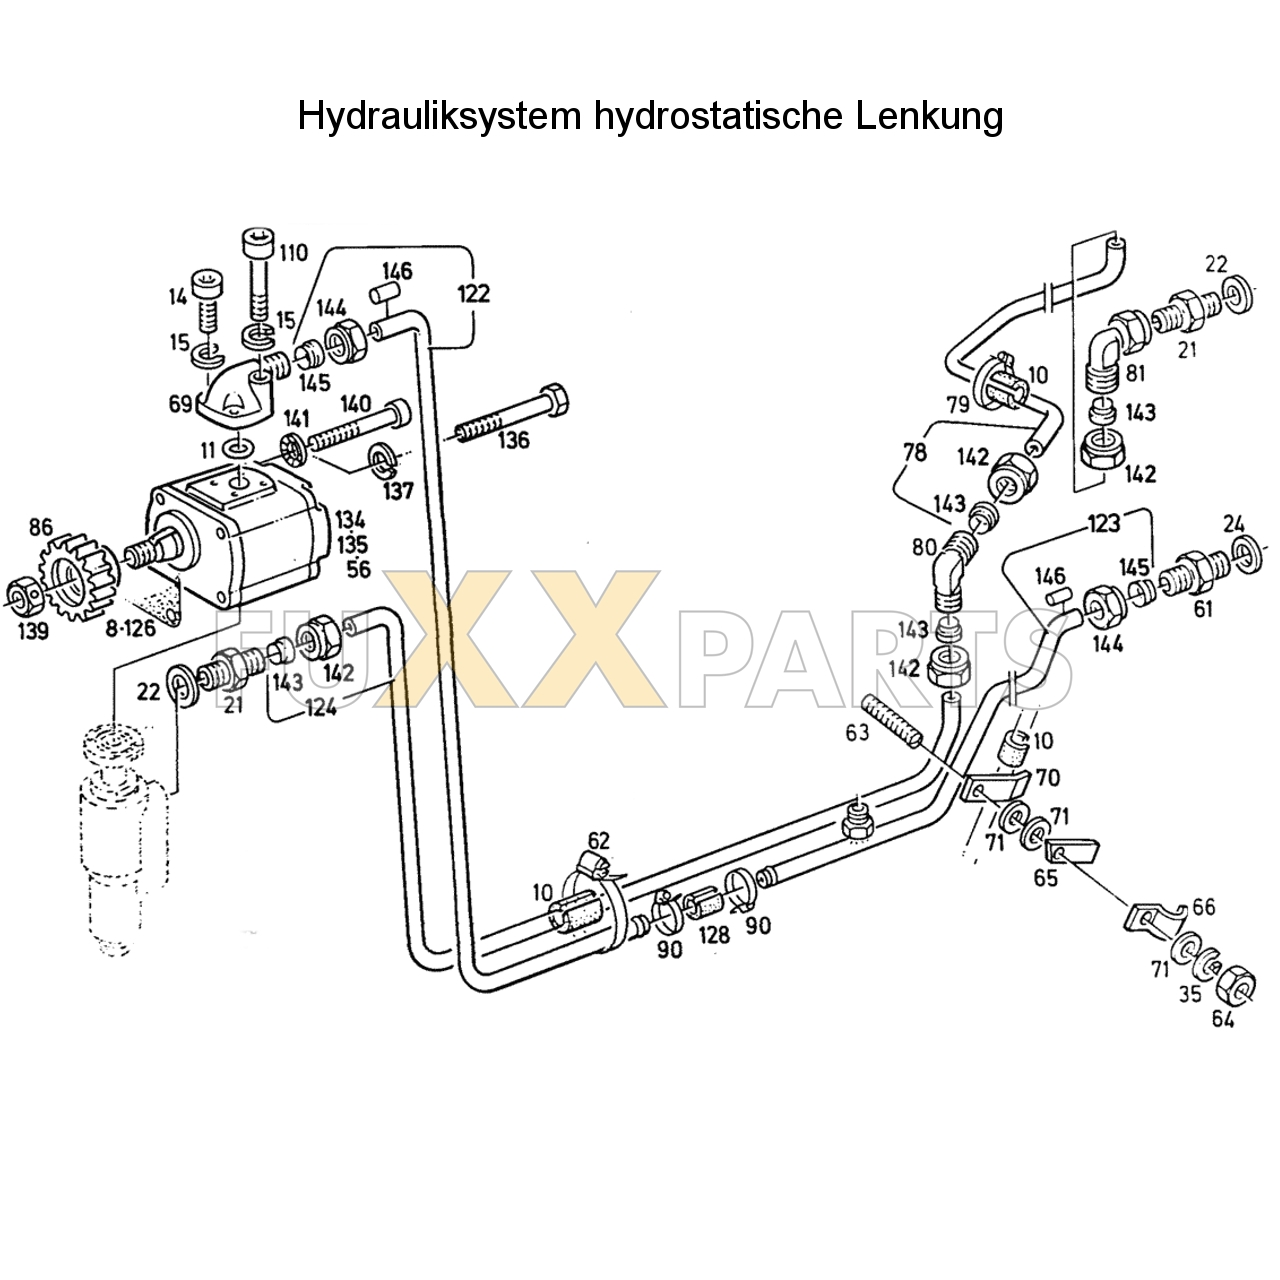 D 7207 Hydrauliksystem hyd. Lenkung